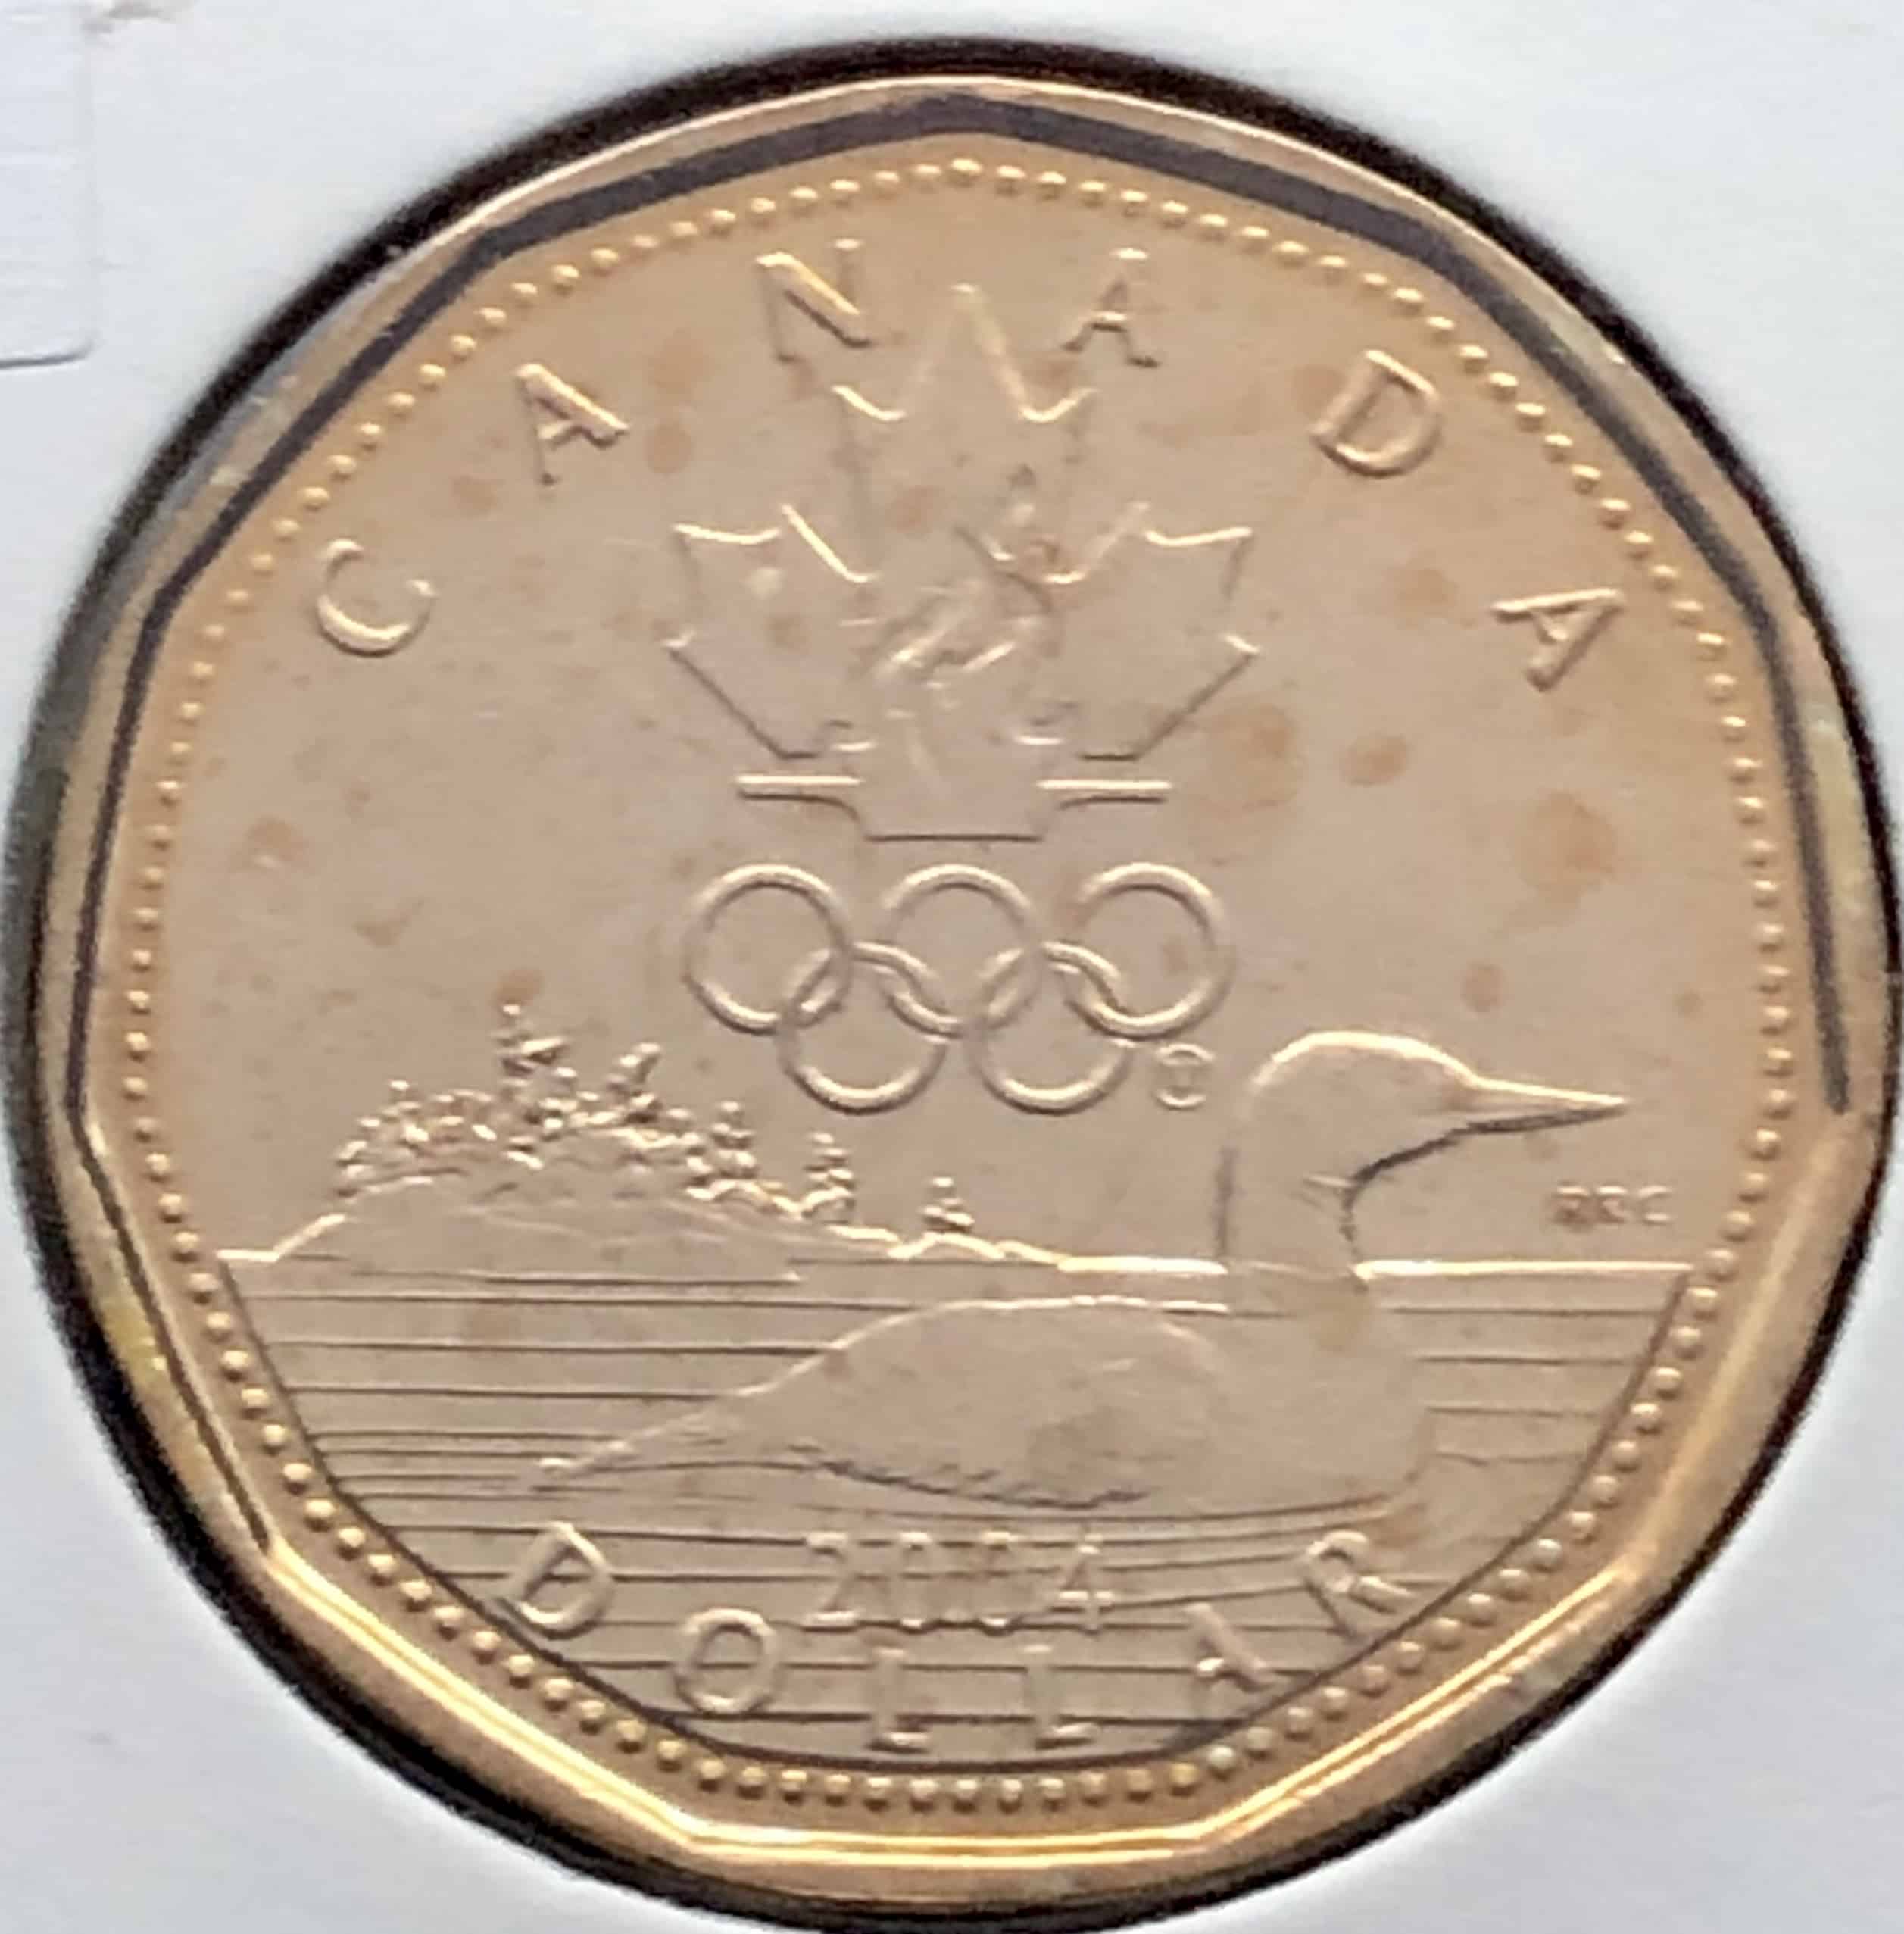 Revers Un plongeon huard du Canada, nageant sur un lac, est accompagné du logo olympique canadien et entouré de l'inscription "CANADA" et de la valeur faciale Écriture : Latin Inscription : CANADA 2004 RRC DOLLAR